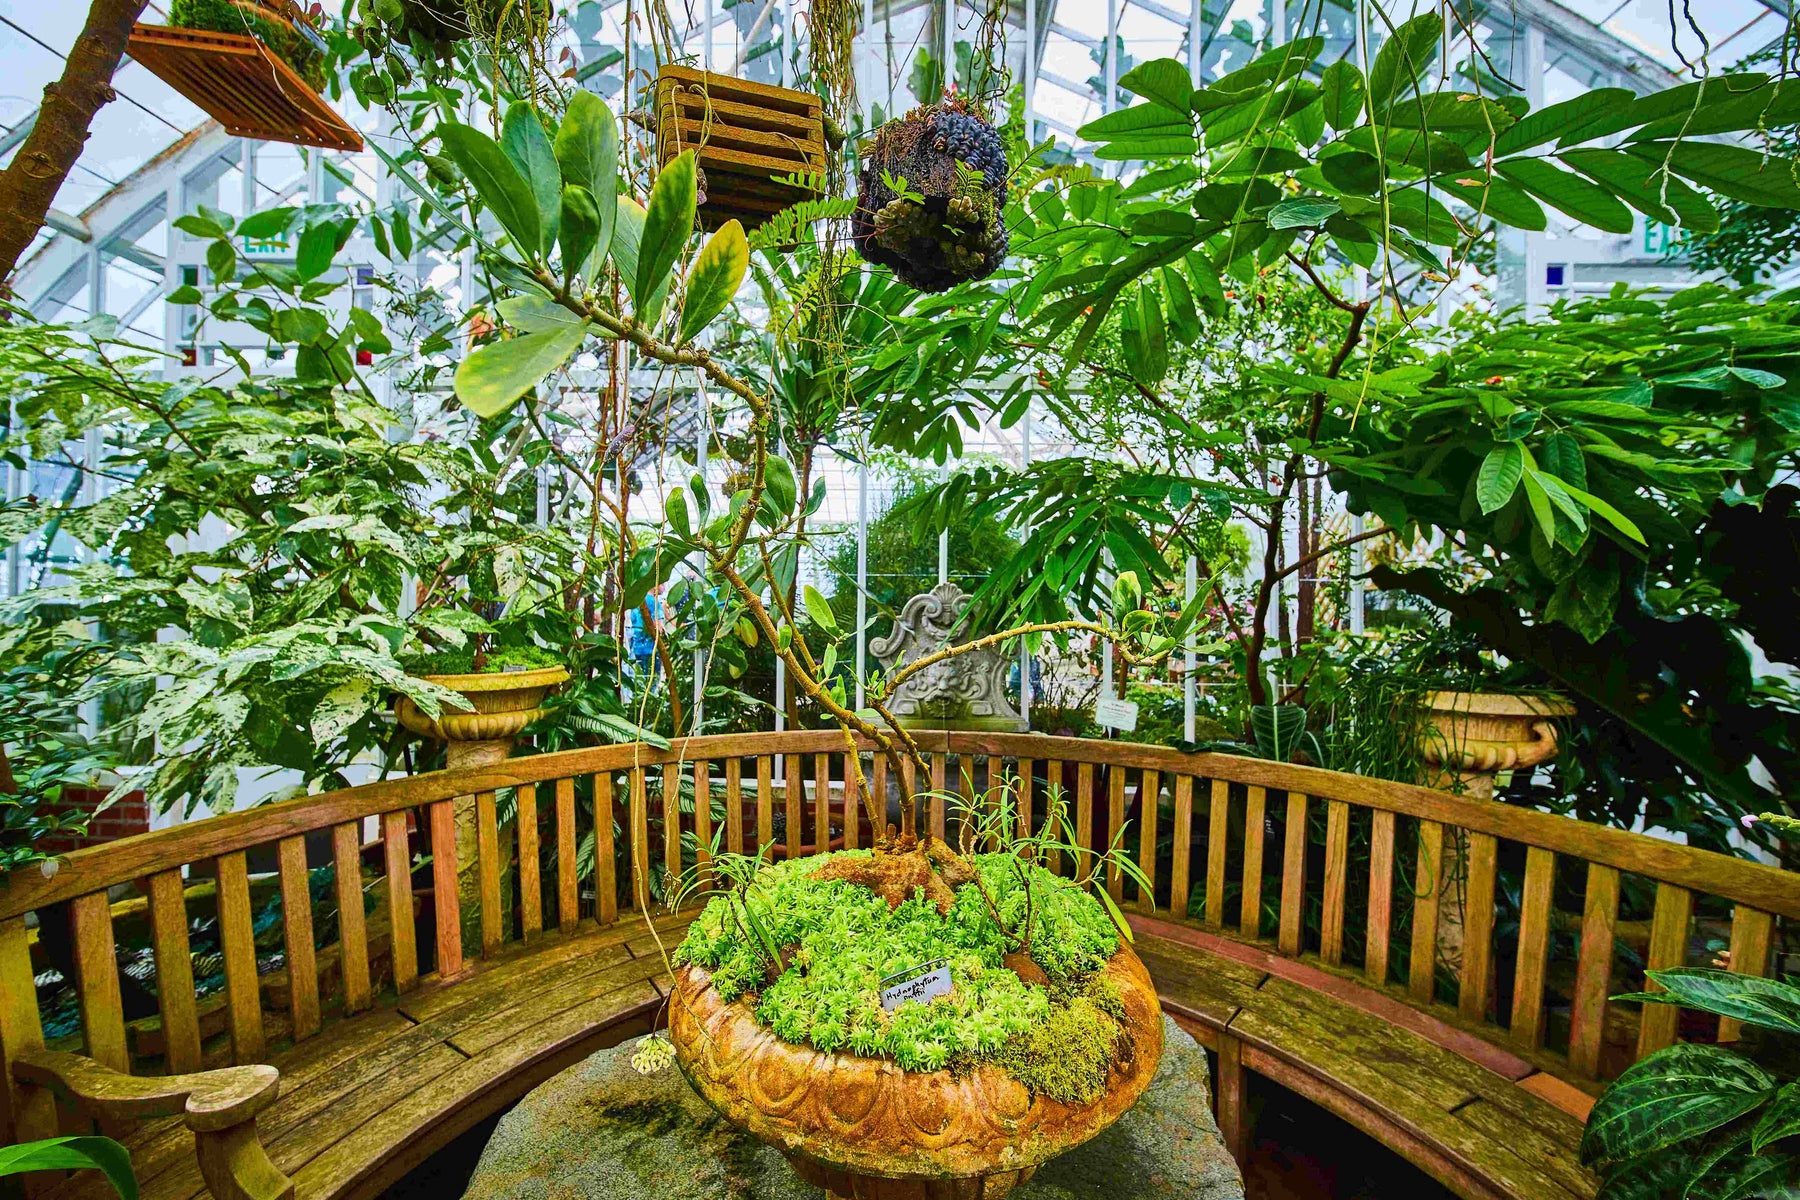 How To Design a Tropical Garden?